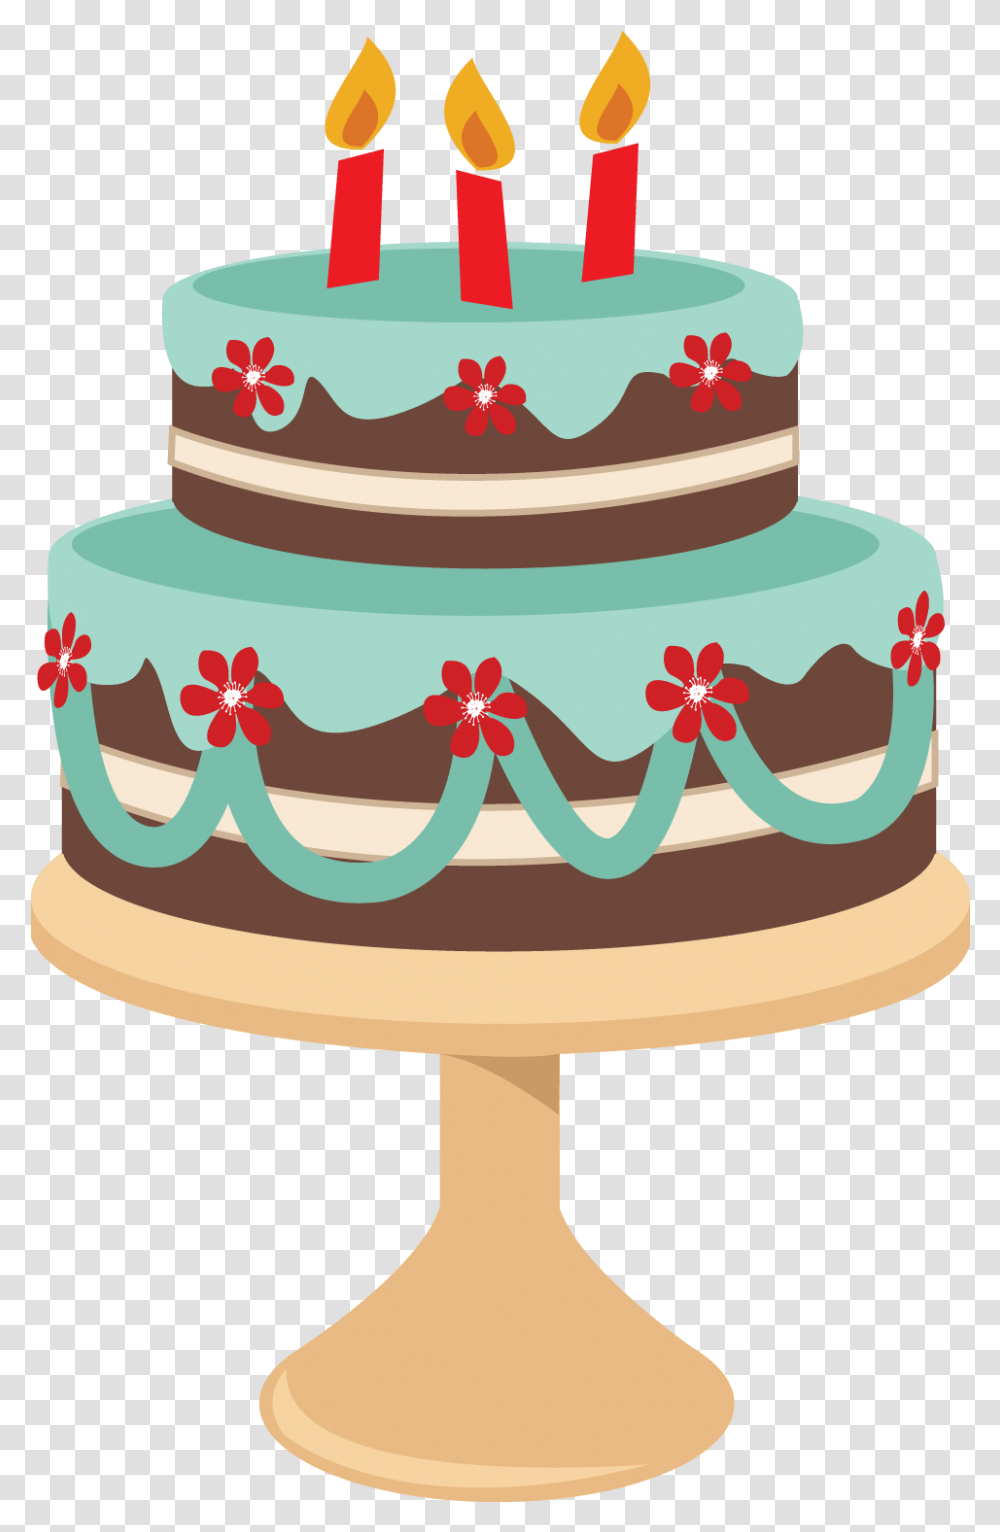 Sgblogosfera Mara Jos Argeso Baking Dibujos De Desenho De Bolo, Cake, Dessert, Food, Birthday Cake Transparent Png